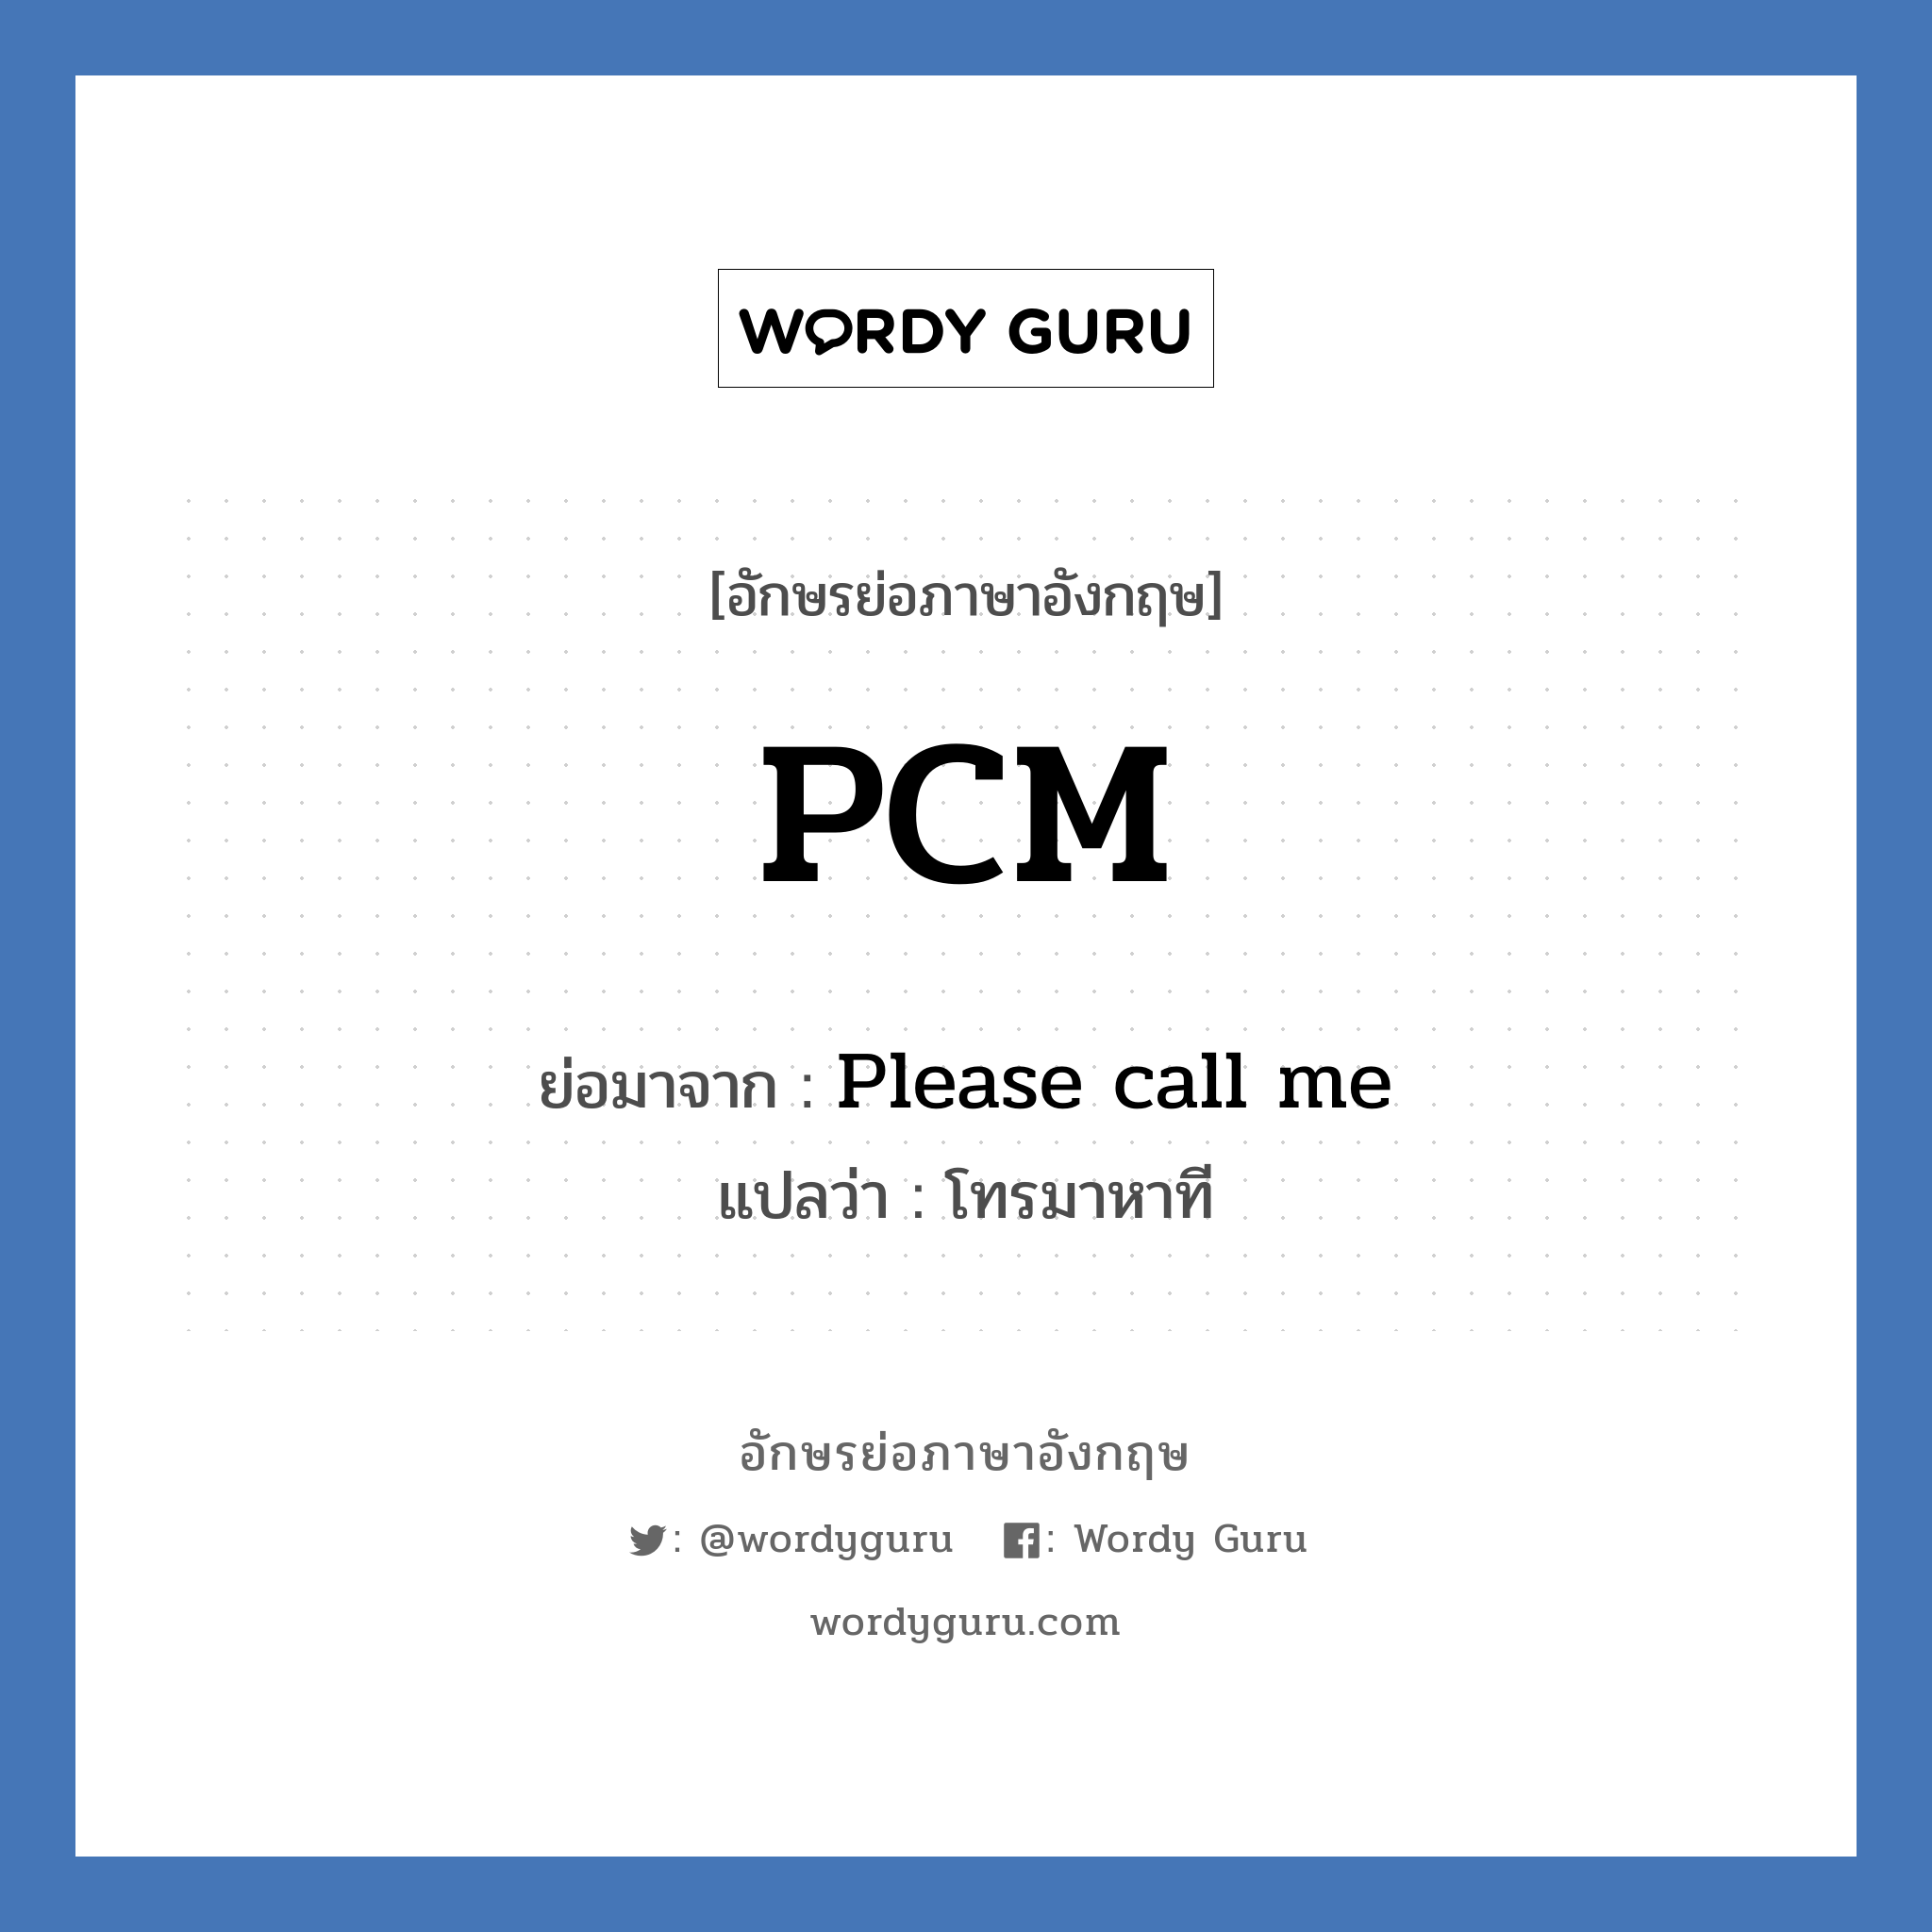 PCM ย่อมาจาก? แปลว่า?, อักษรย่อภาษาอังกฤษ PCM ย่อมาจาก Please call me แปลว่า โทรมาหาที